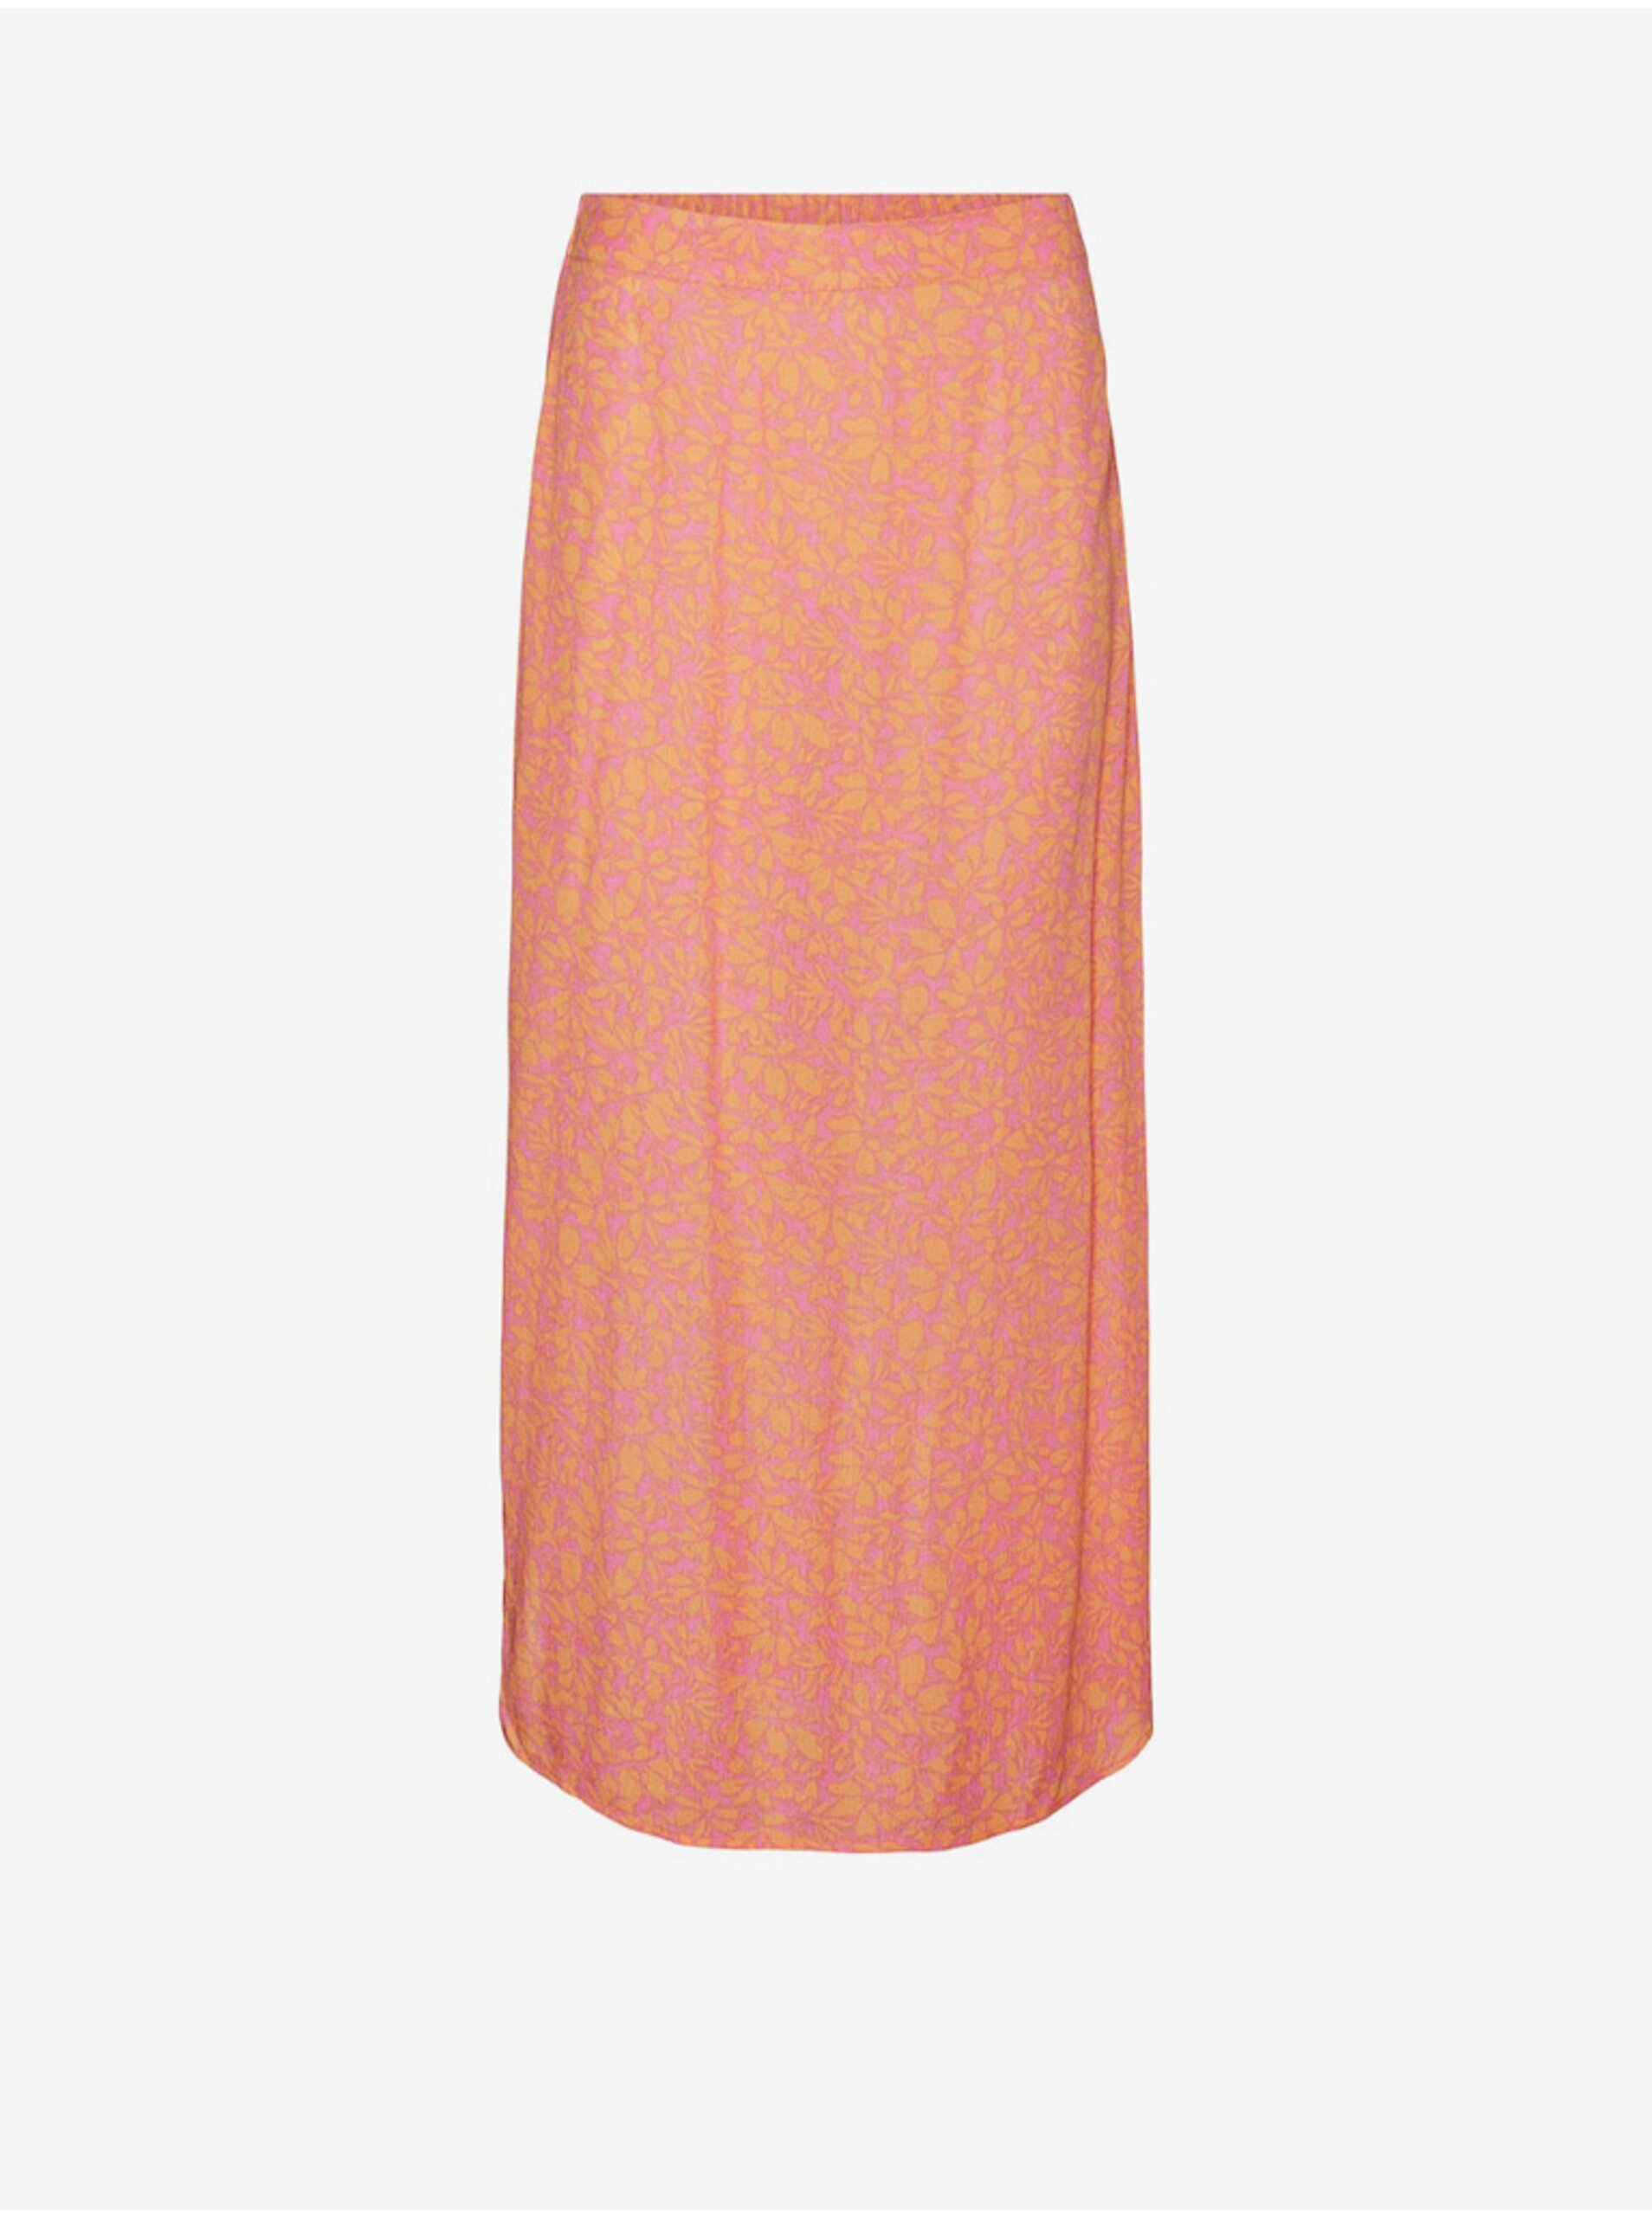 Lacno Ružovo-oranžová dámska kvetovaná maxi sukňa Vero Moda Menny